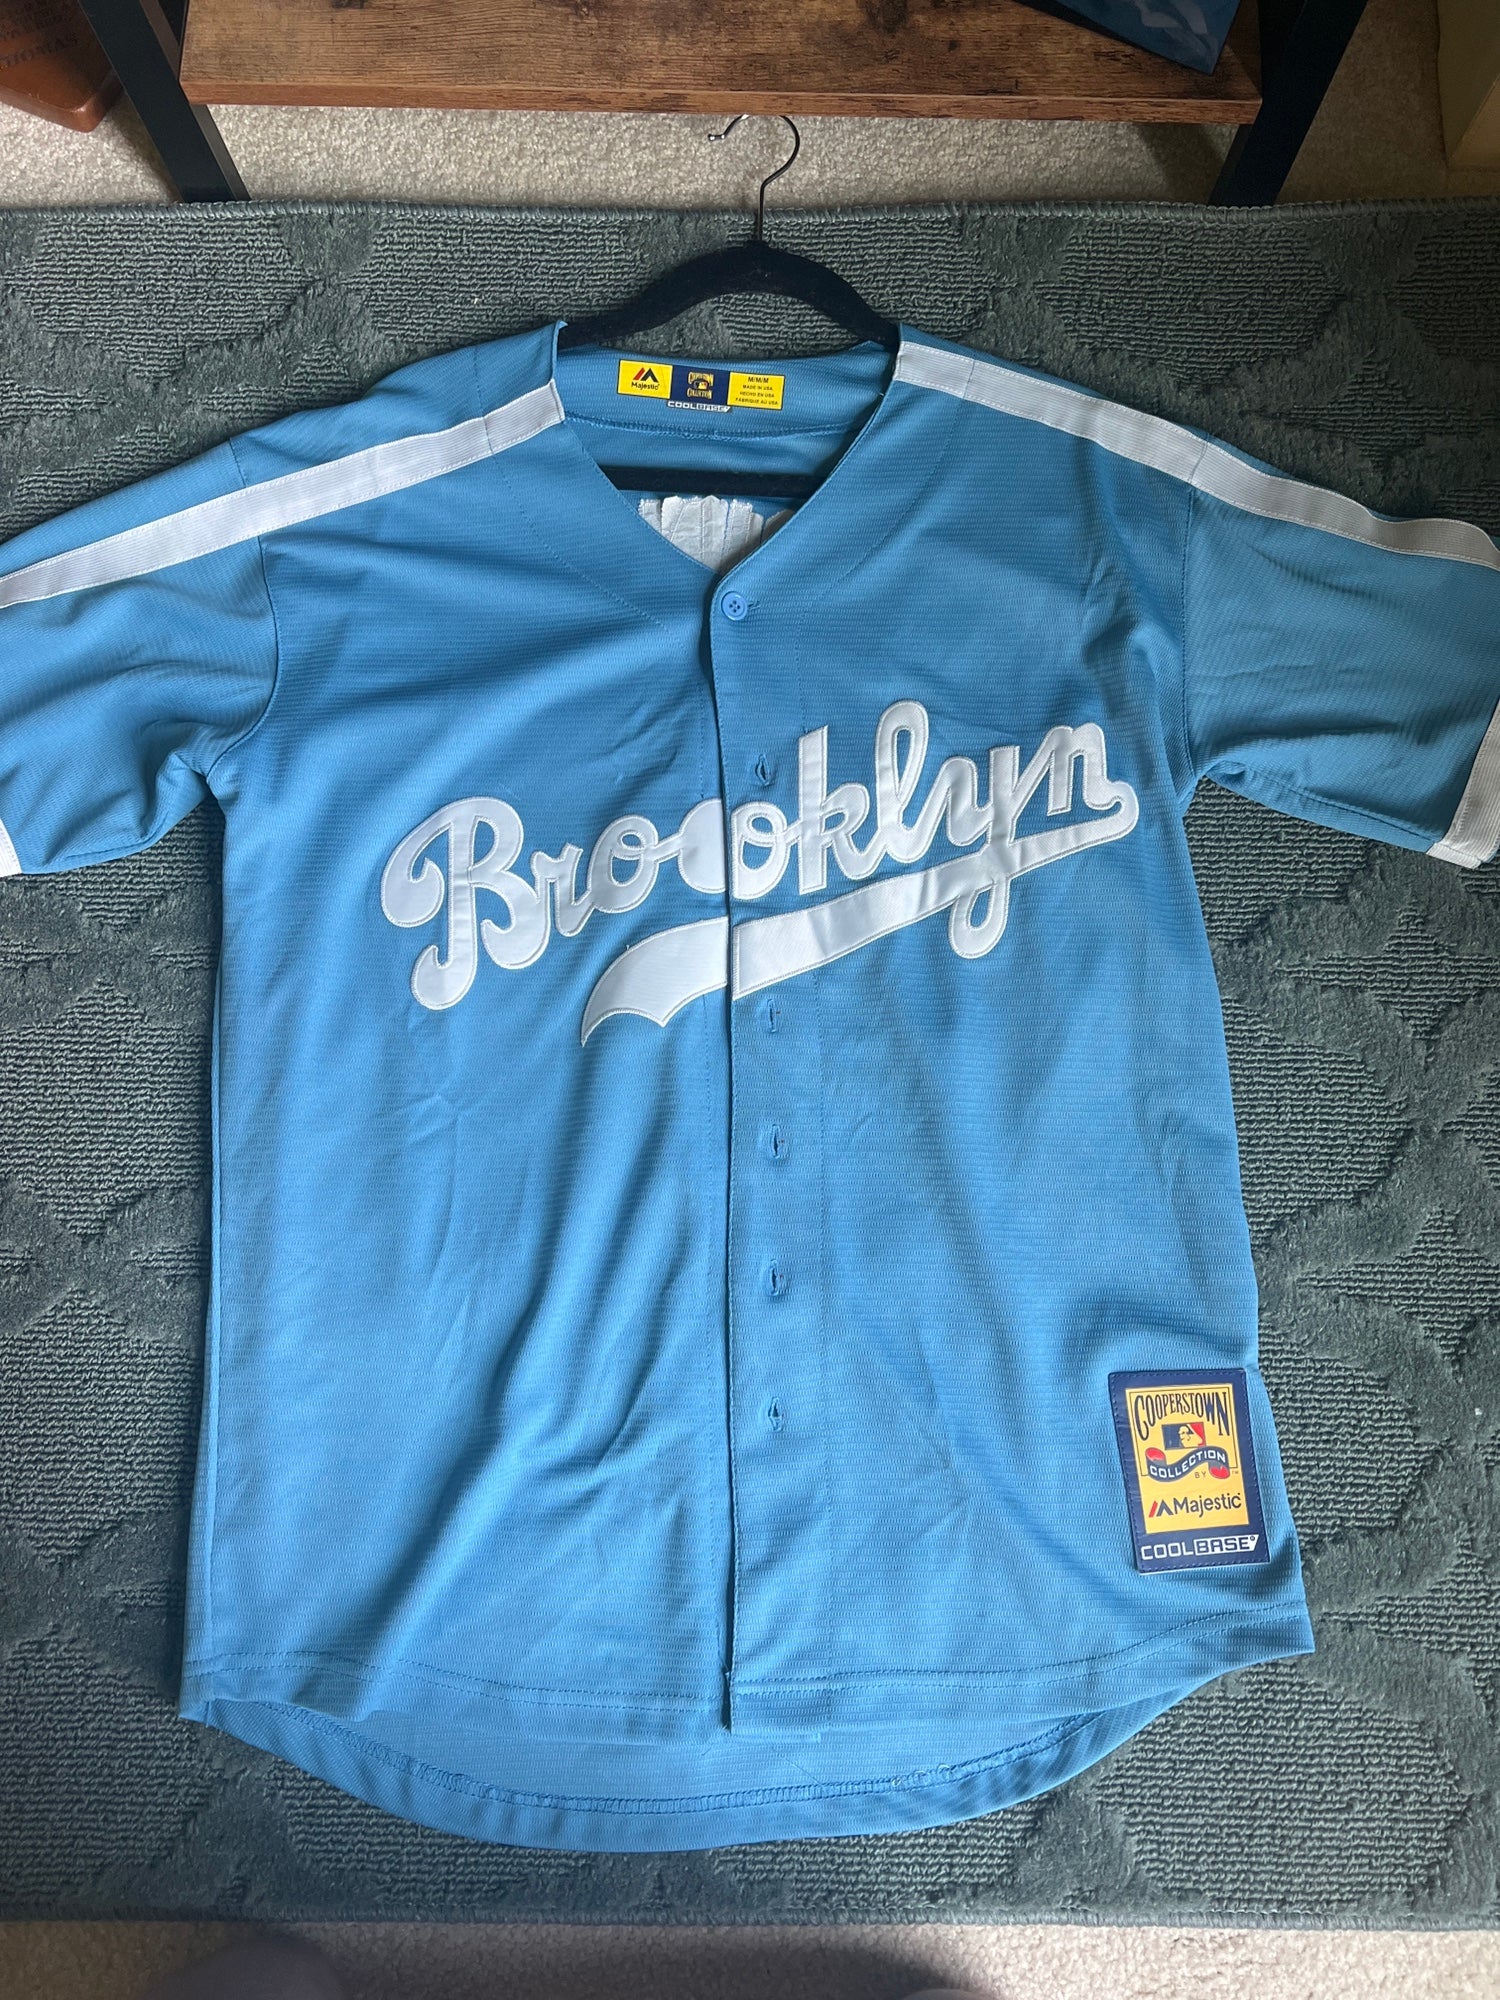 dodgers brooklyn jersey